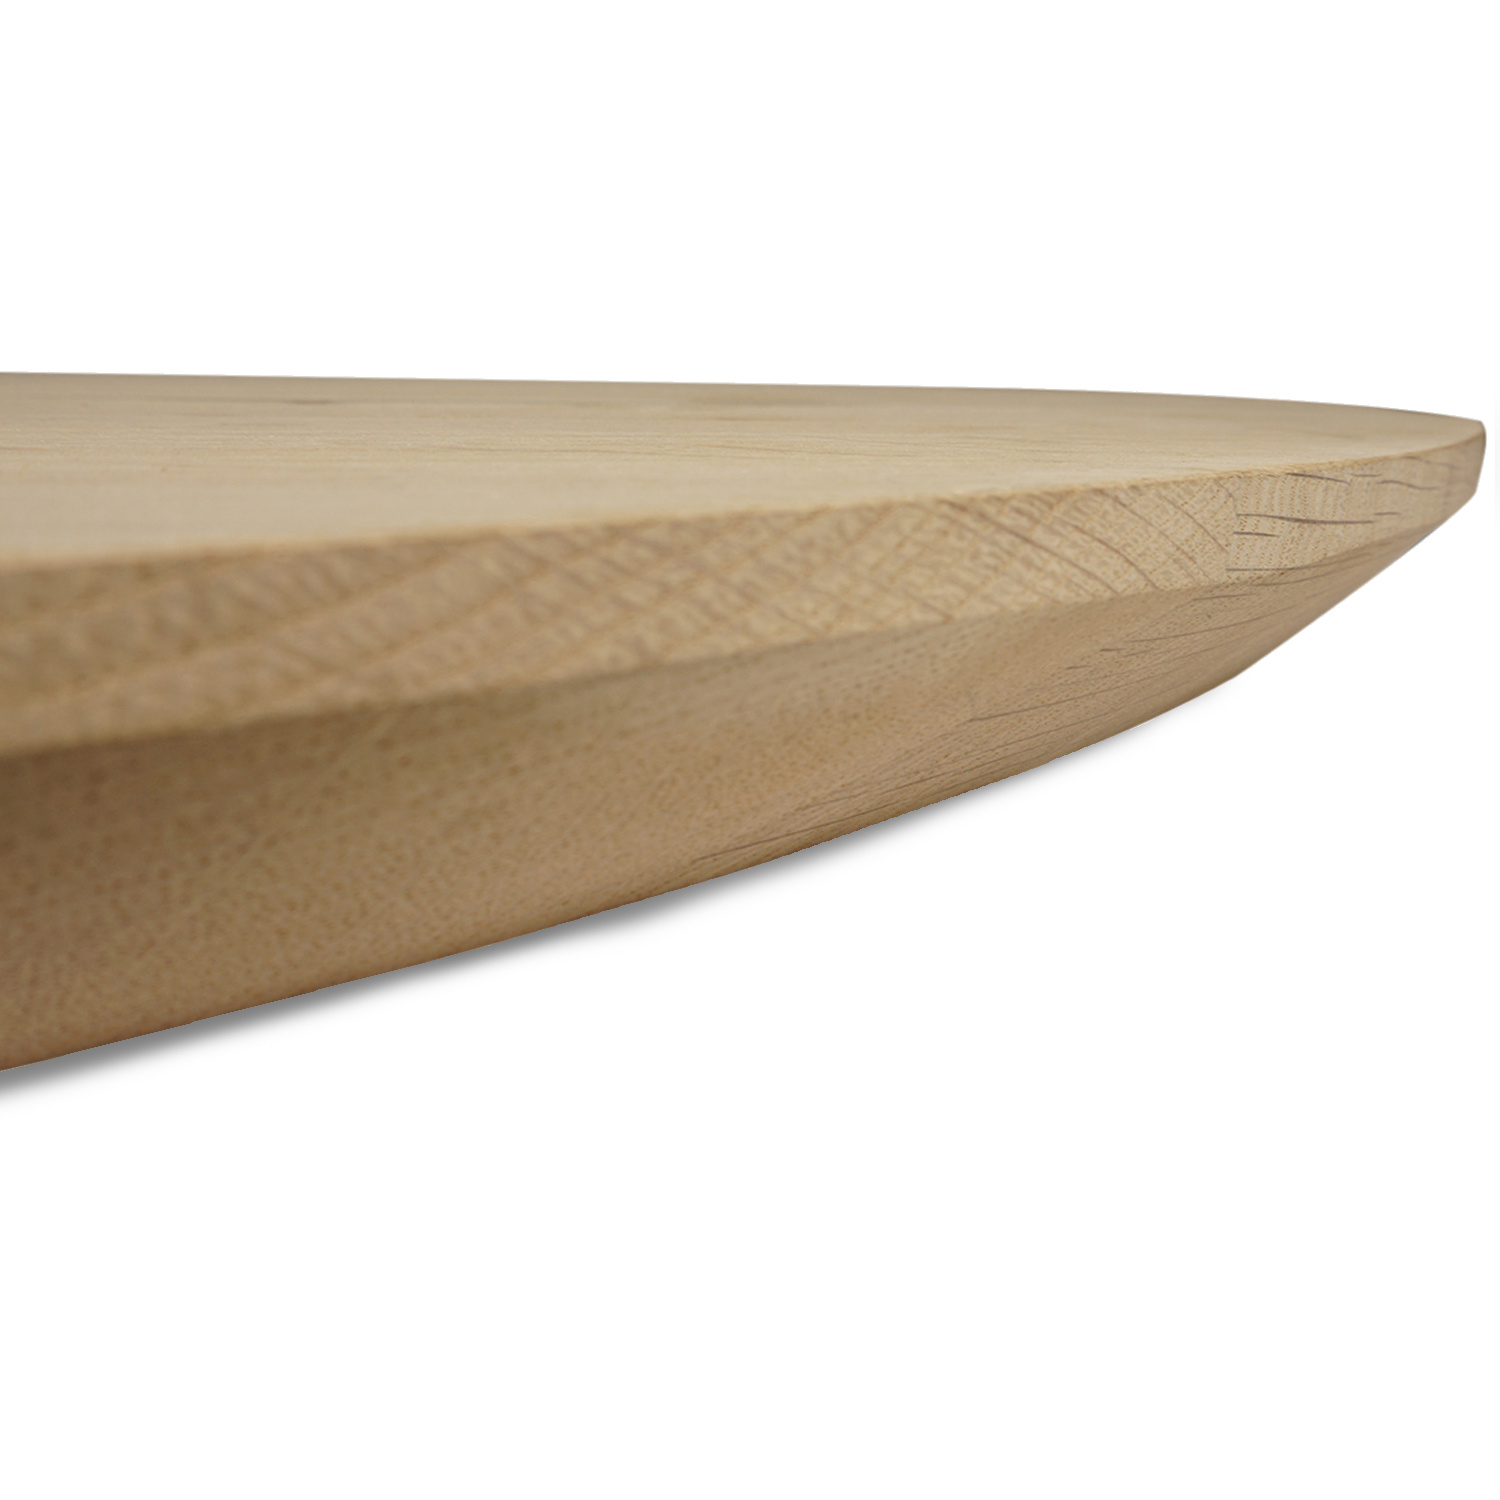  Rond eiken tafelblad op maat - 4 cm dik (1-laag) - rustiek Europees eikenhout - met brede lamellen (circa 10-12 cm)nhout - verlijmd kd 8-12% - diameter van 35 tot 117 cm